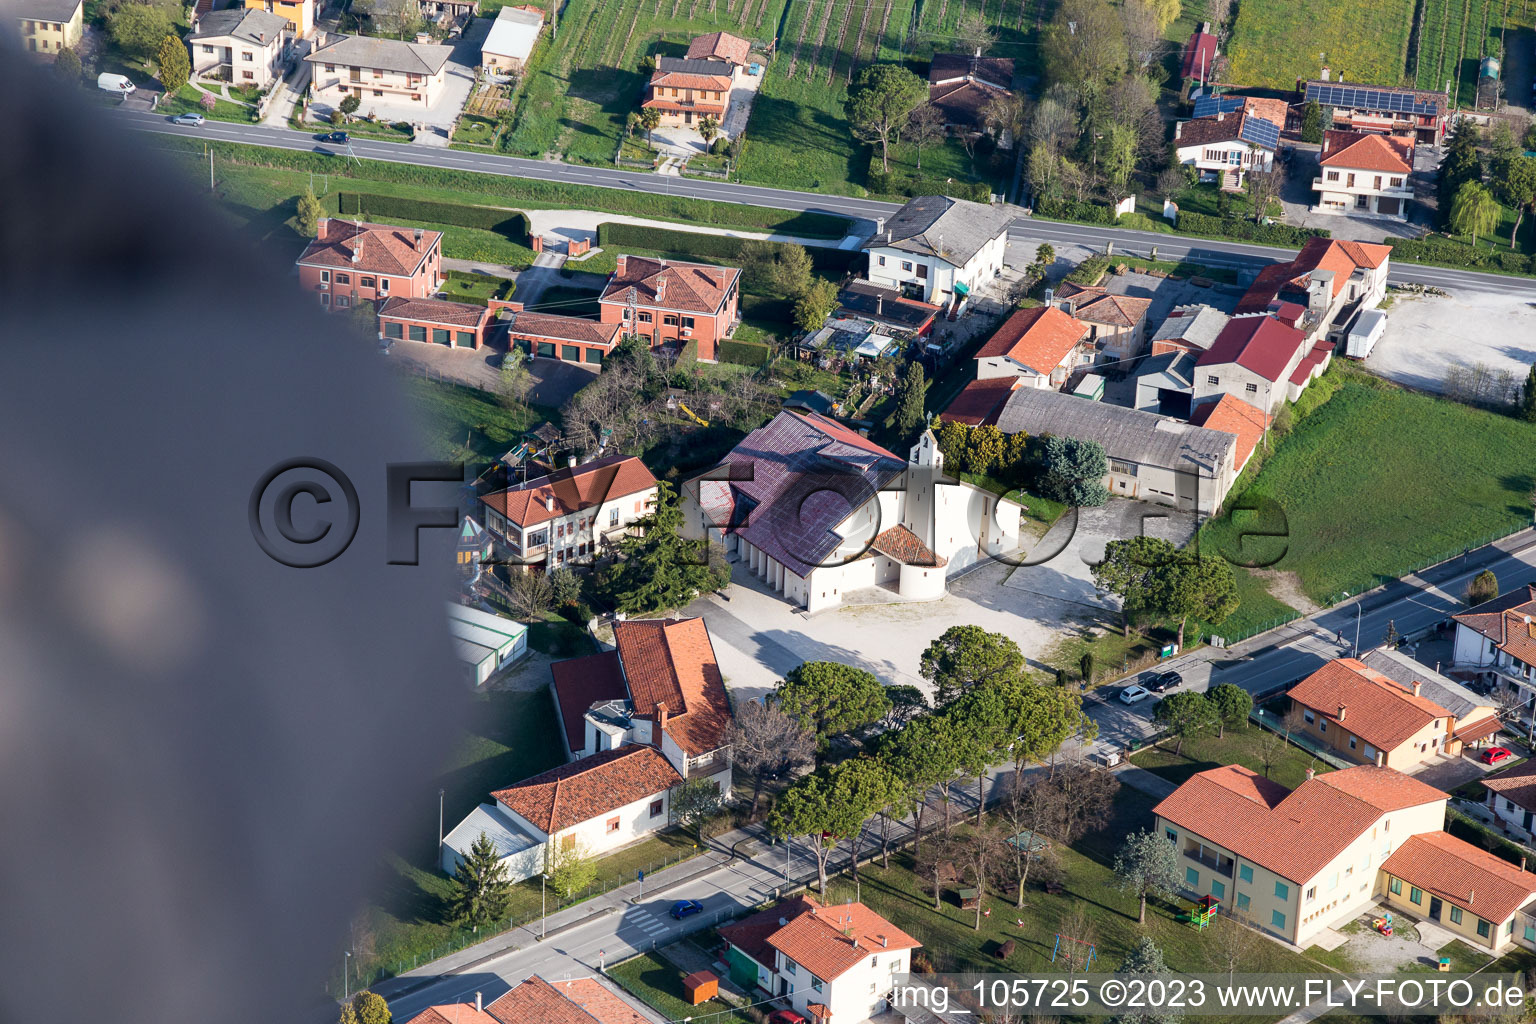 Aerial view of Osteria al Trovatore in the state Veneto, Italy